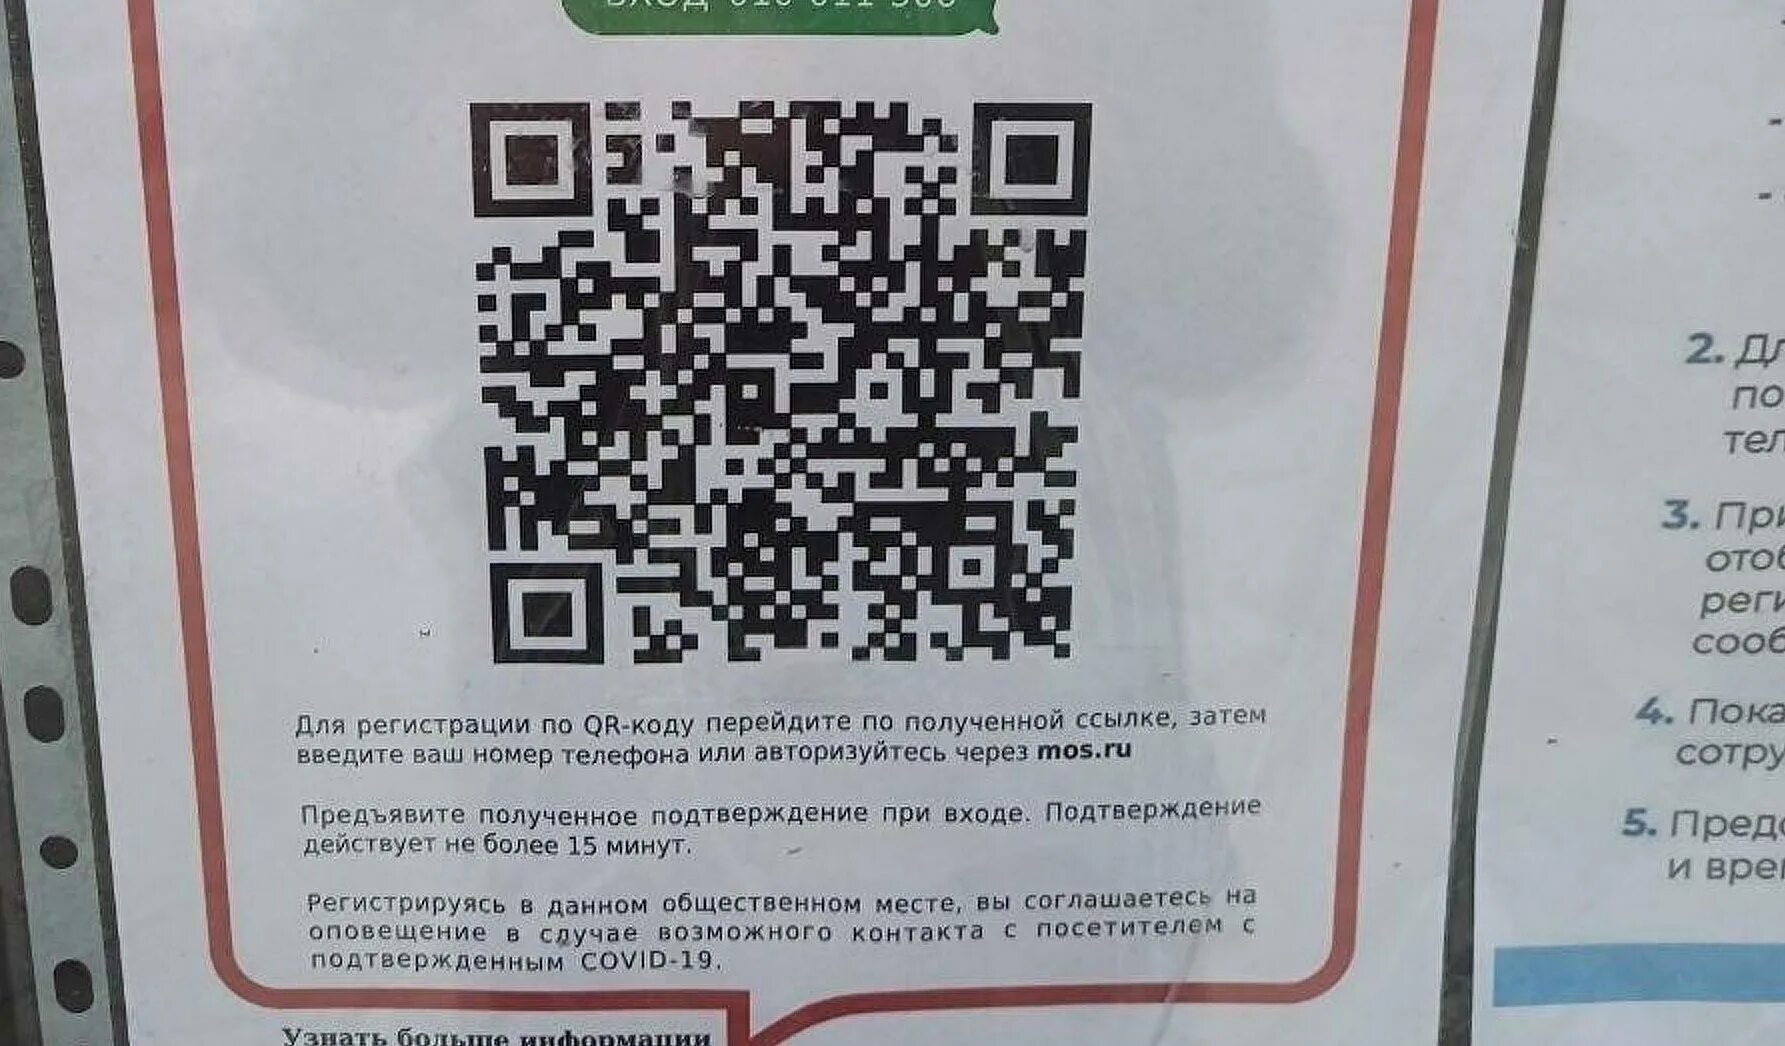 QR код. Таблички с QR кодами. Российский QR код. Плакат с QR кодом.